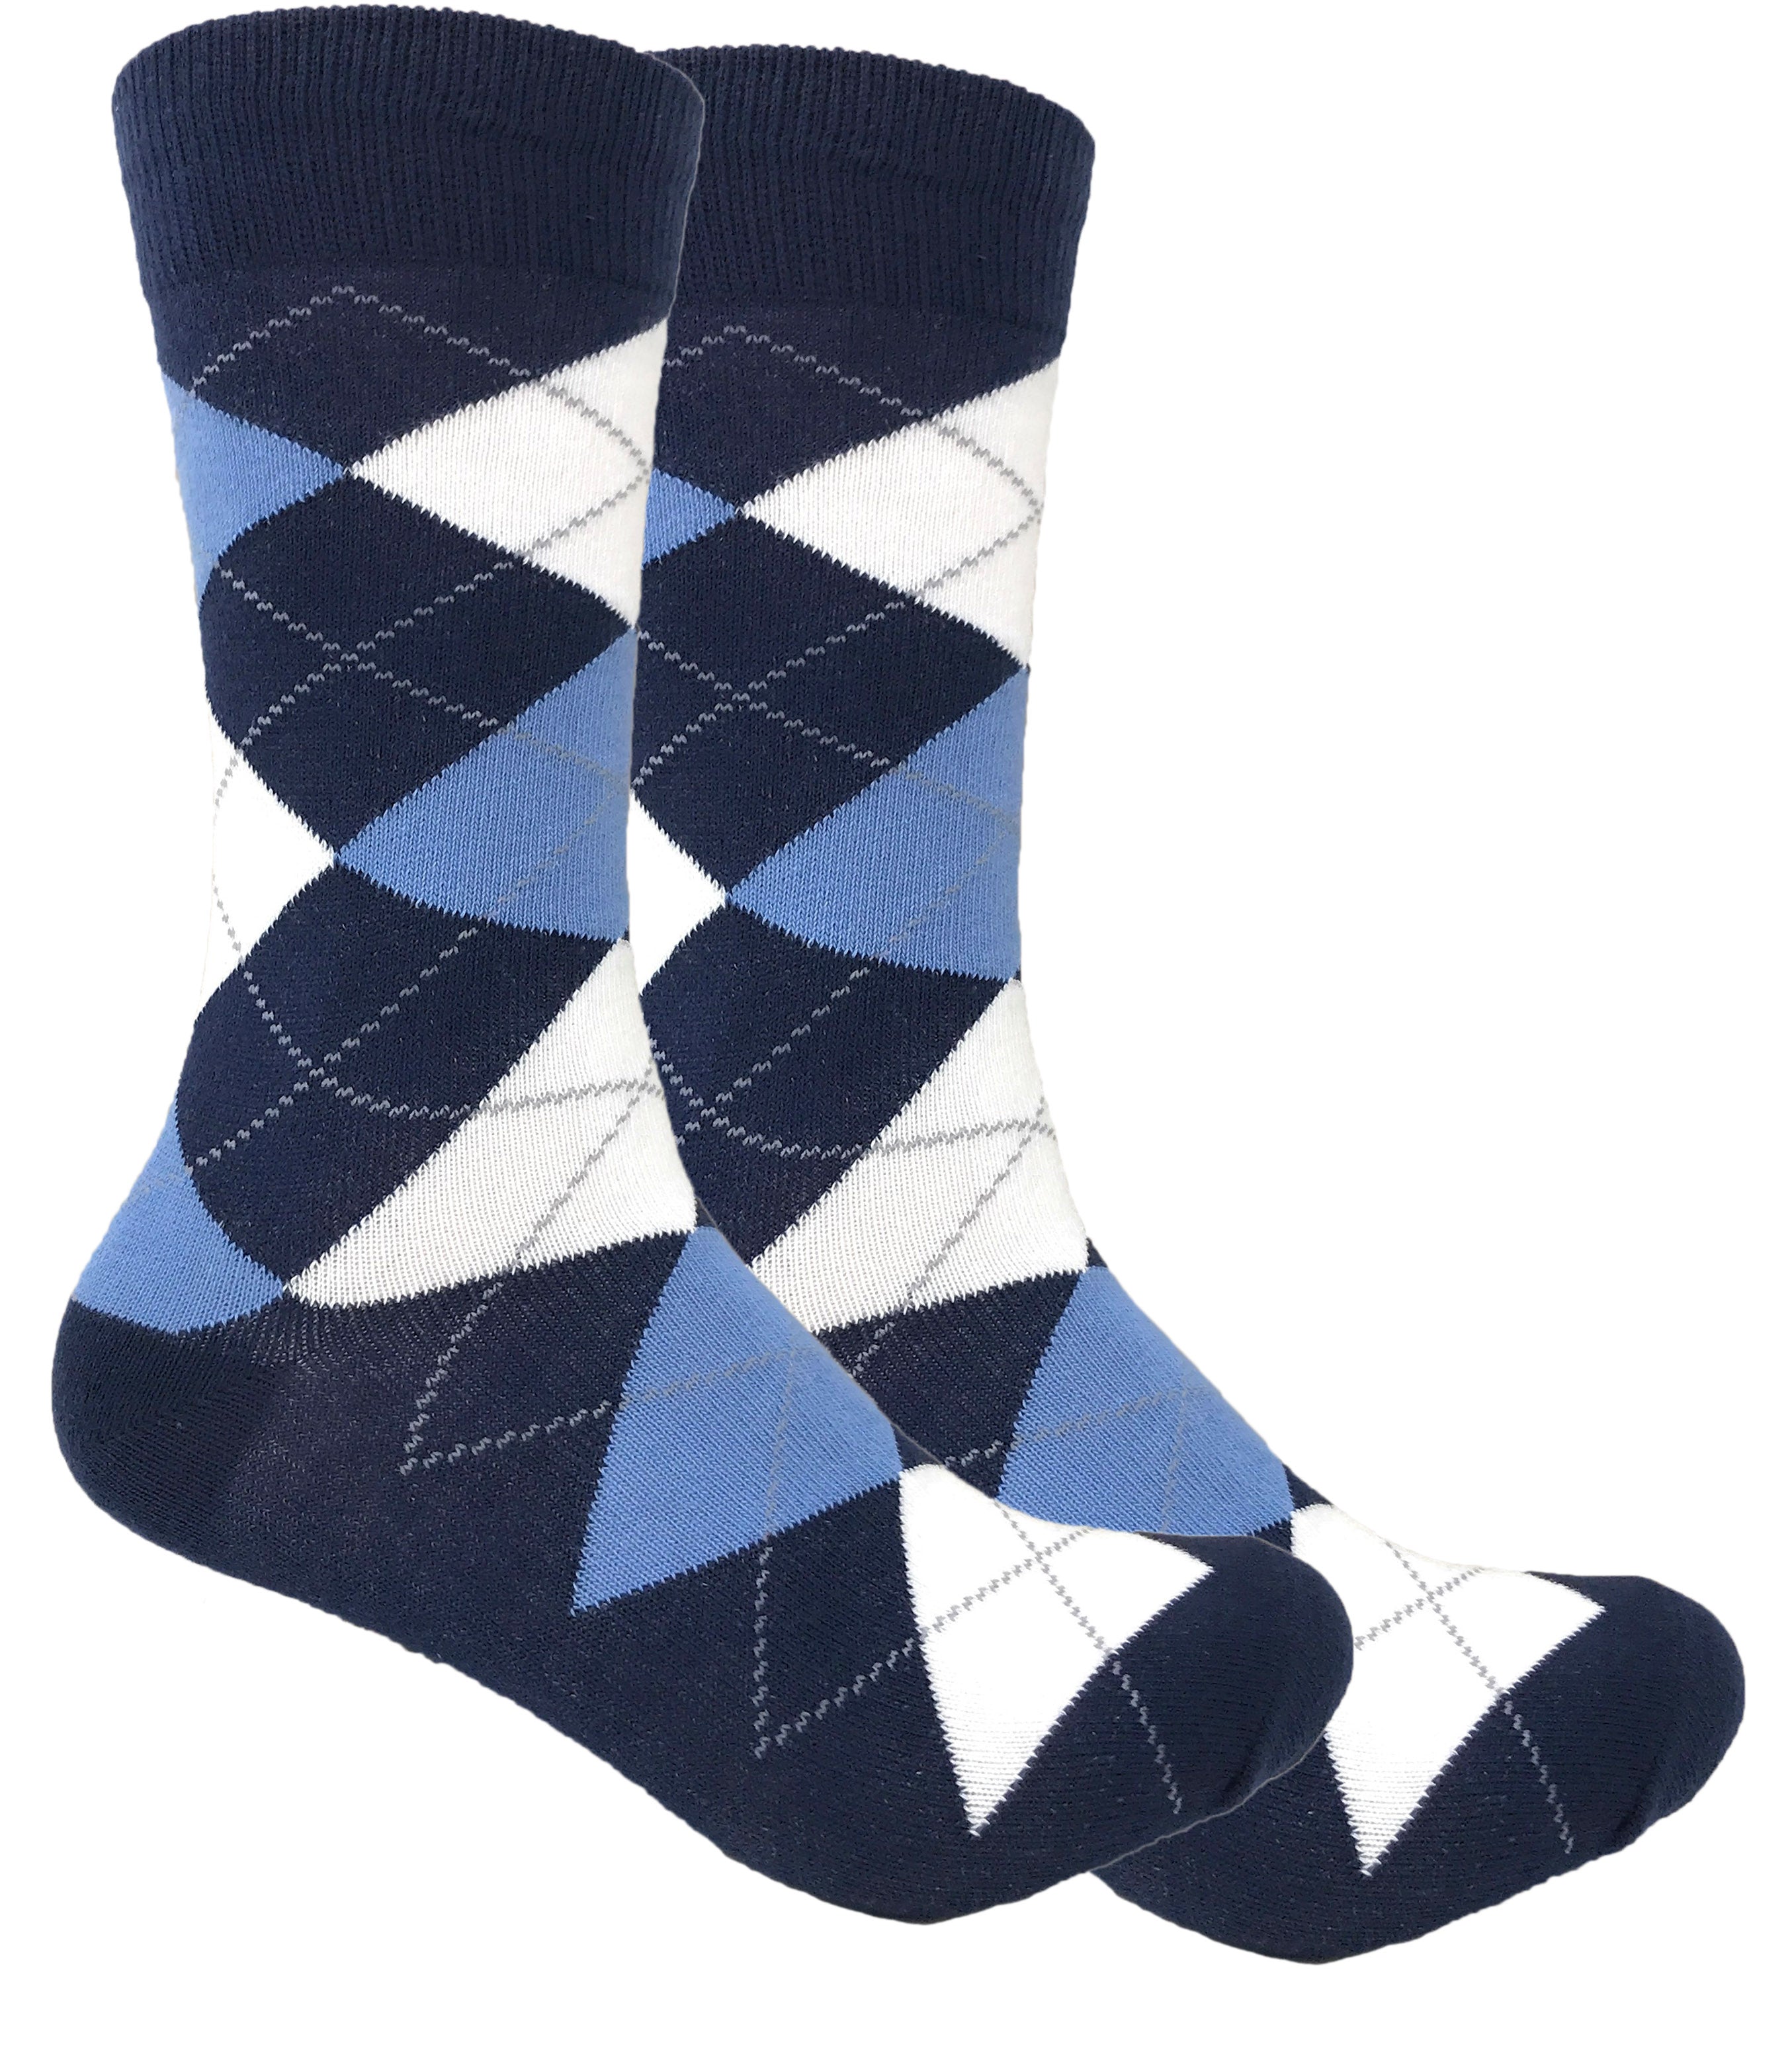 Black Label Men's Dress Socks - Argyle - Navy, Steel Blue and White